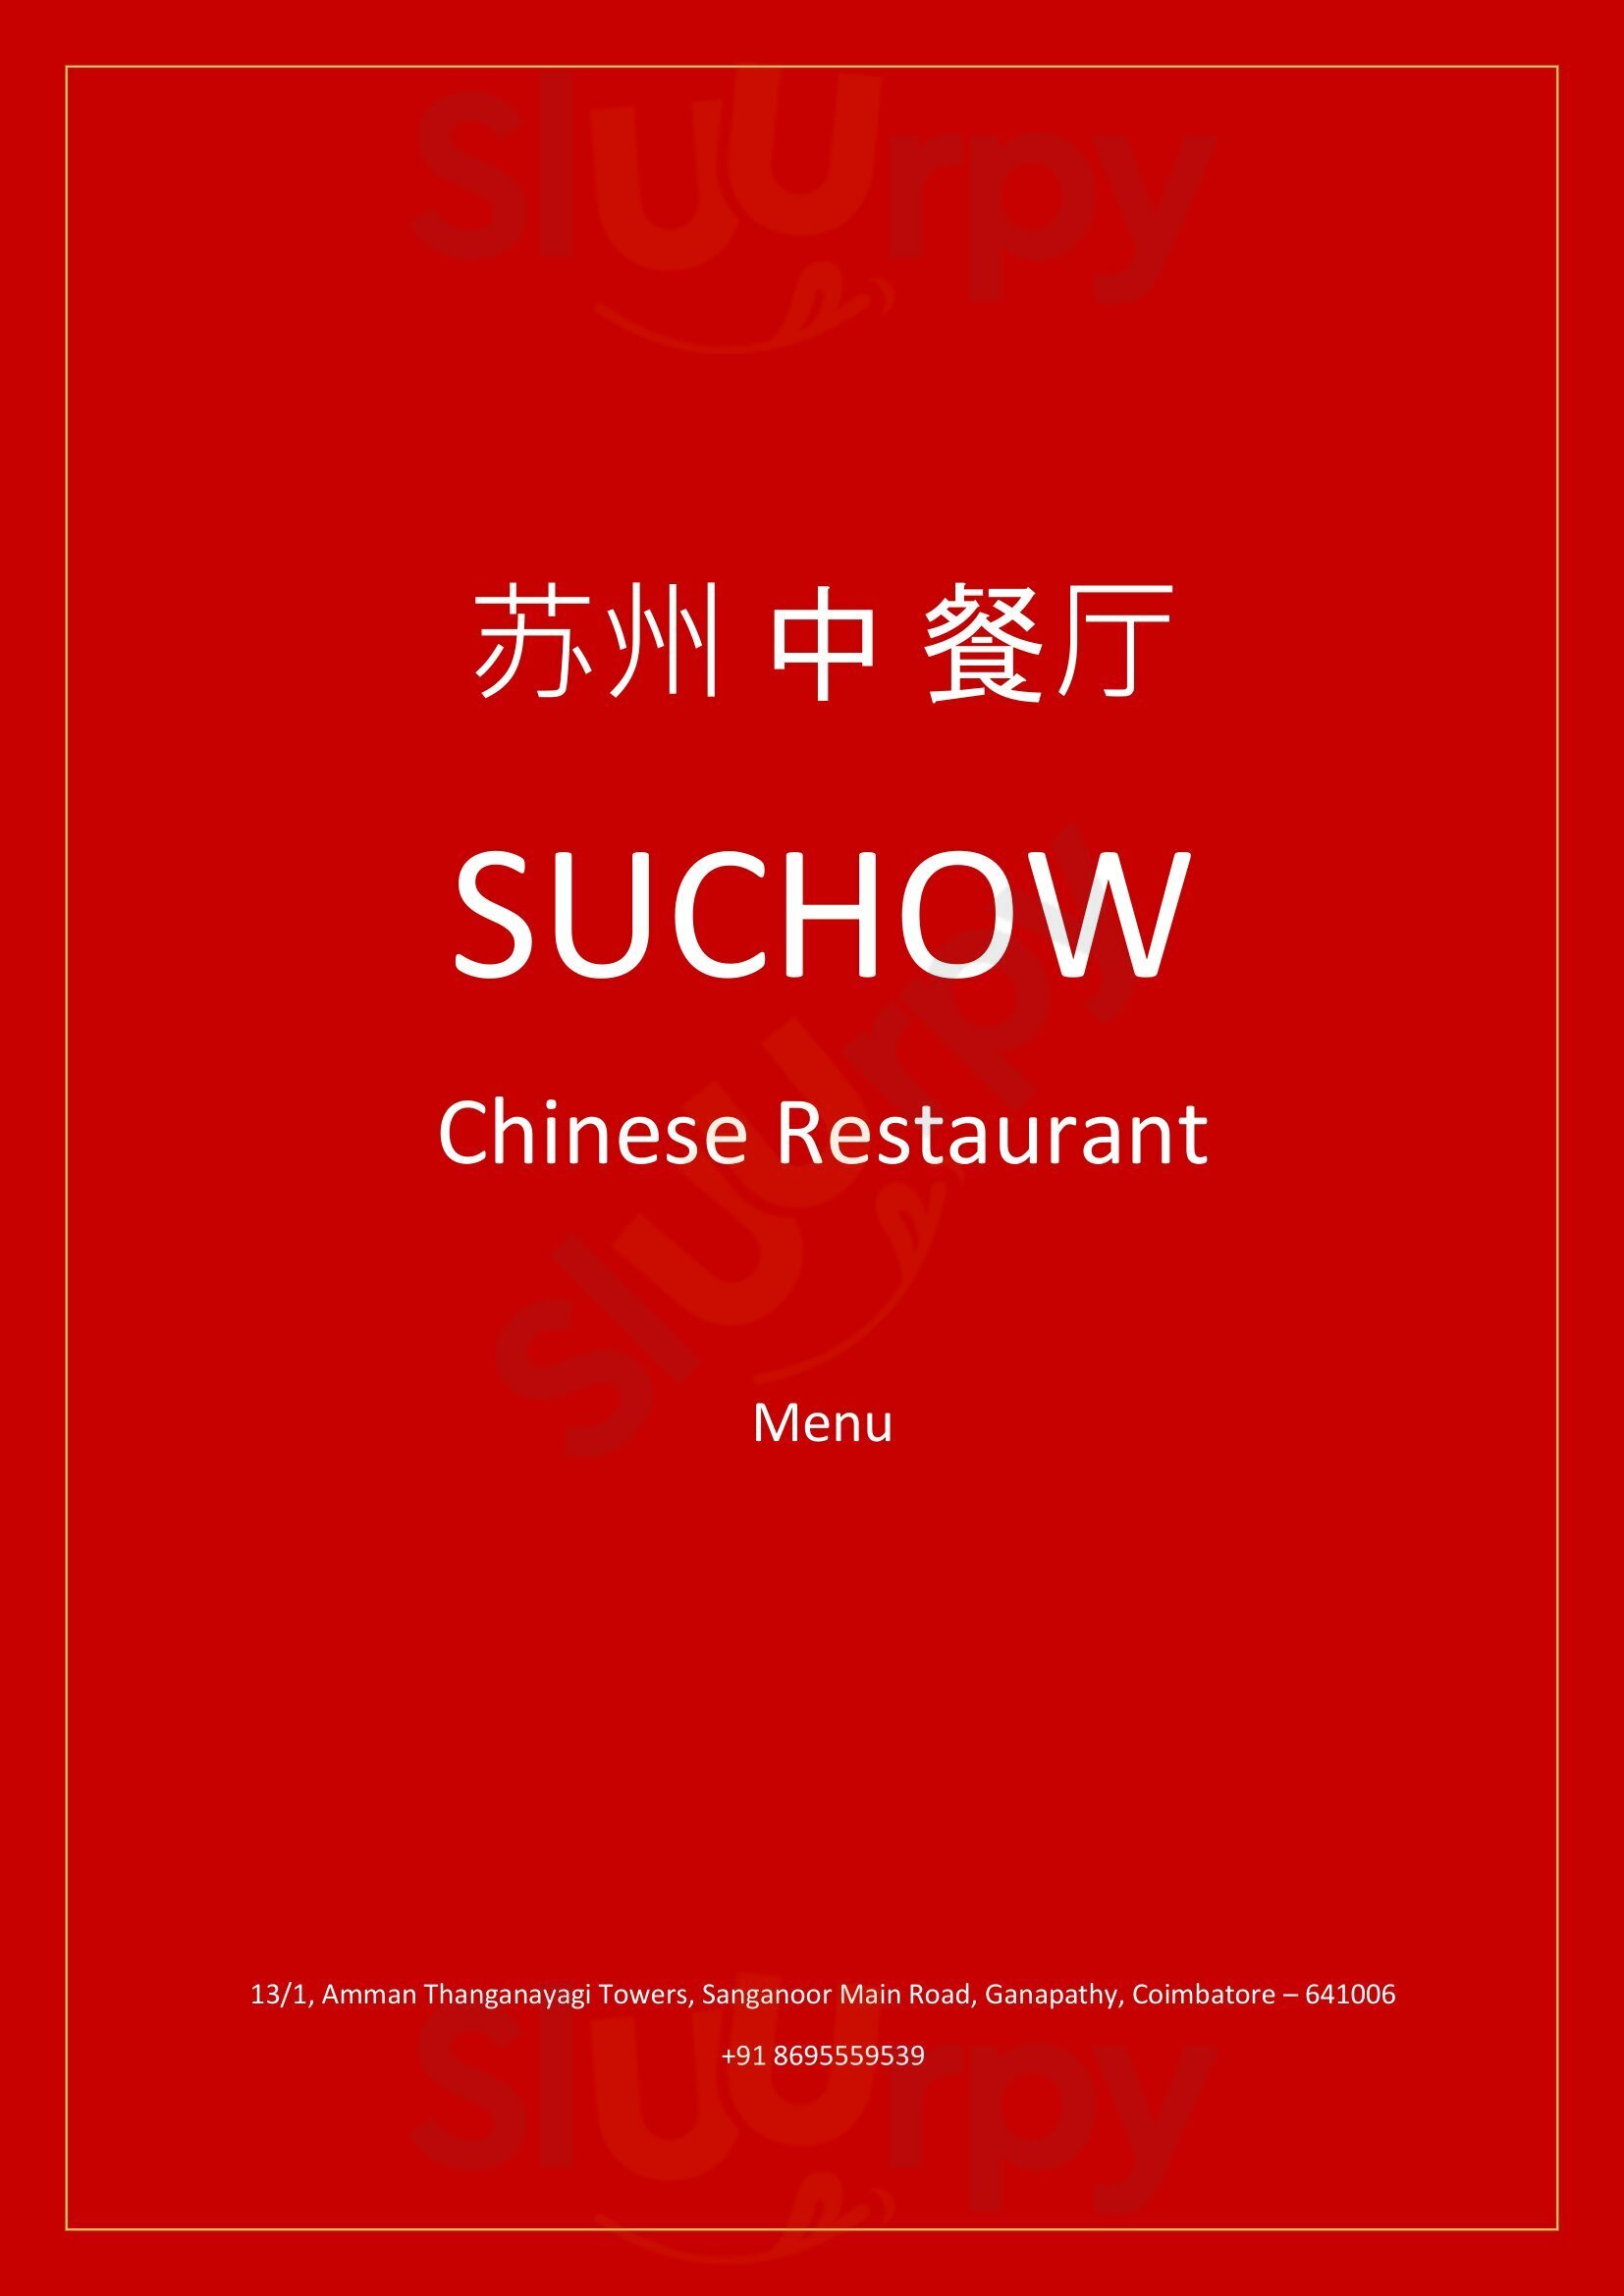 Suchow Chinese Restaurant Coimbatore Menu - 1